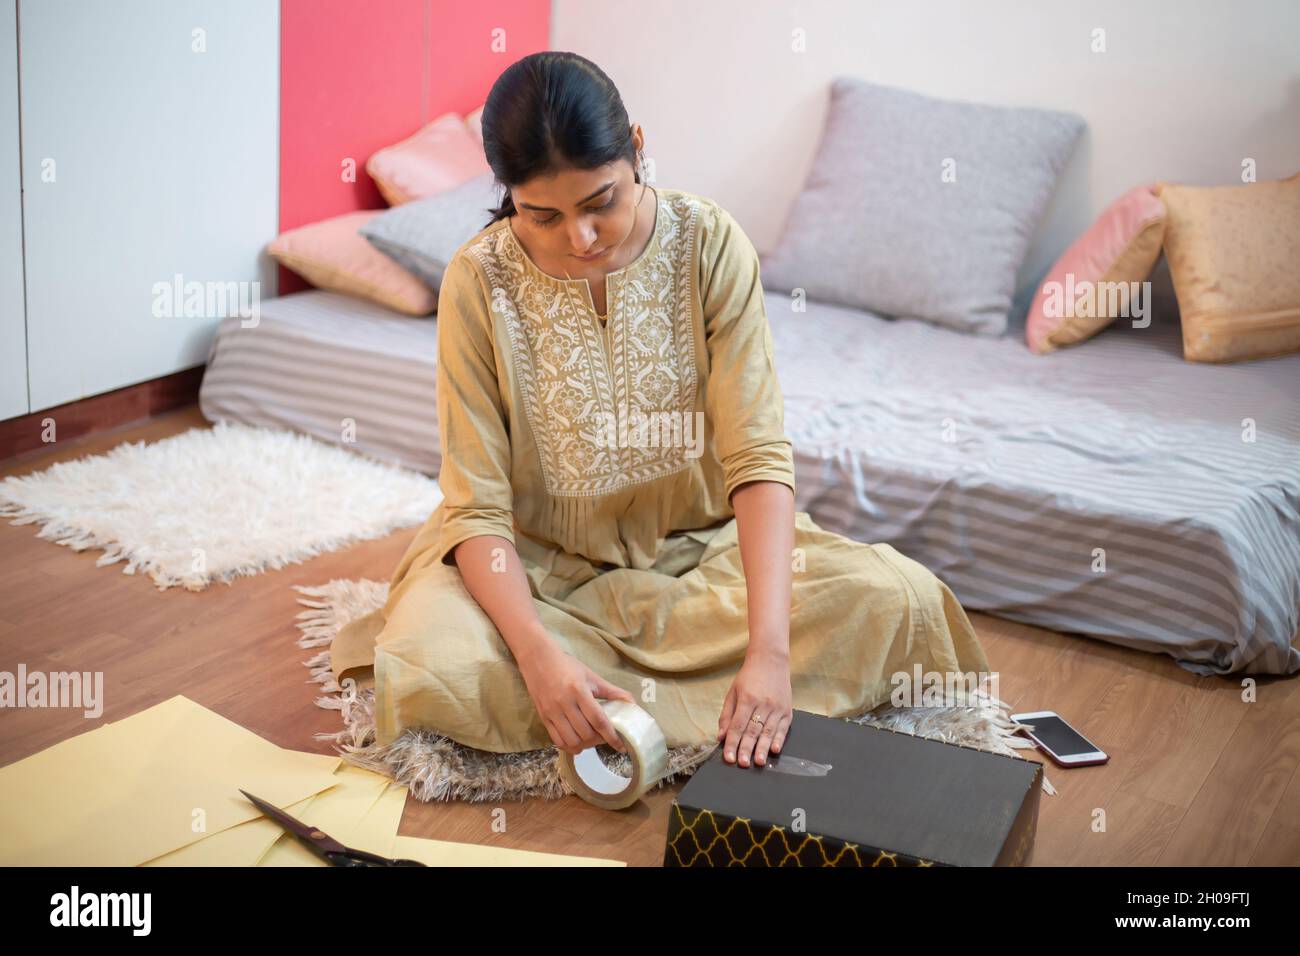 Mujer joven del negocio indio que embala ropa nueva o vestidos para vender  la tienda de la tela, dueño en línea pequeño de la ropa del inicio,  preparando productos para el envío